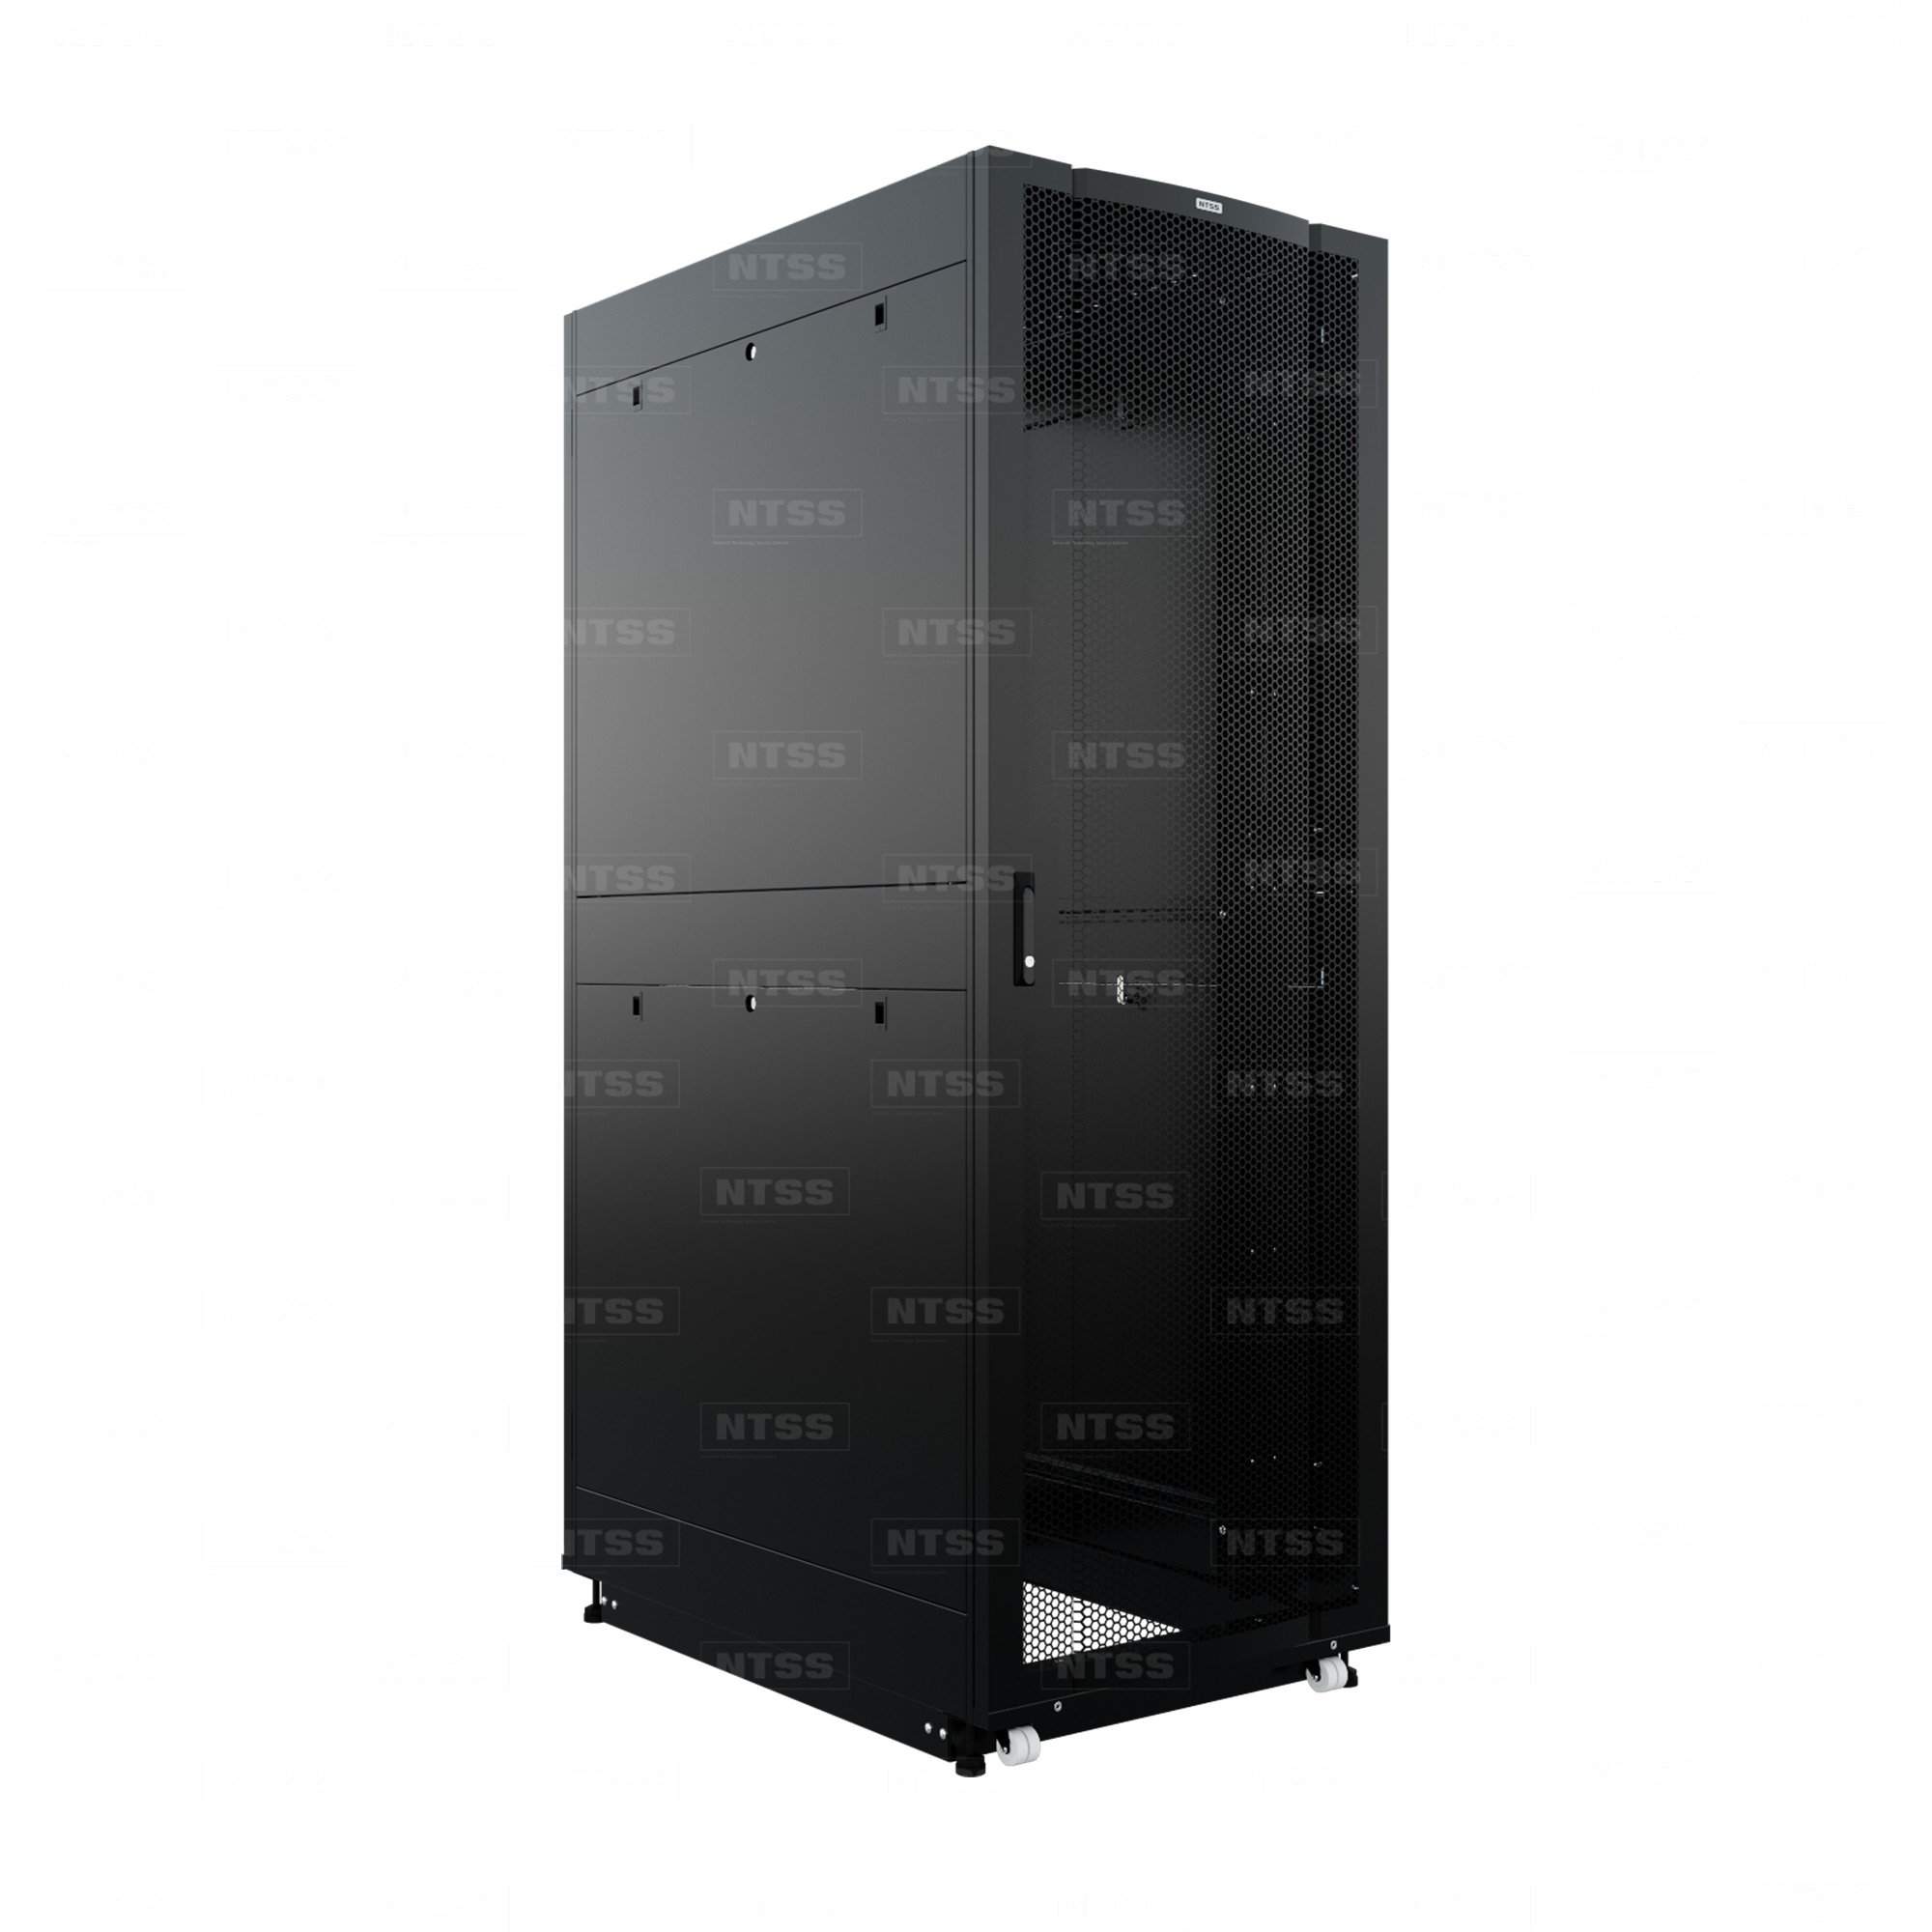 19" Напольный серверный шкаф NTSS ПРОЦОД PC 42U 800х1200 мм, передняя дверь перфорация, задняя дверь распашная двойная перфорированная, боковые стенки, регулируемые опоры, ролики, черный RAL 9005  